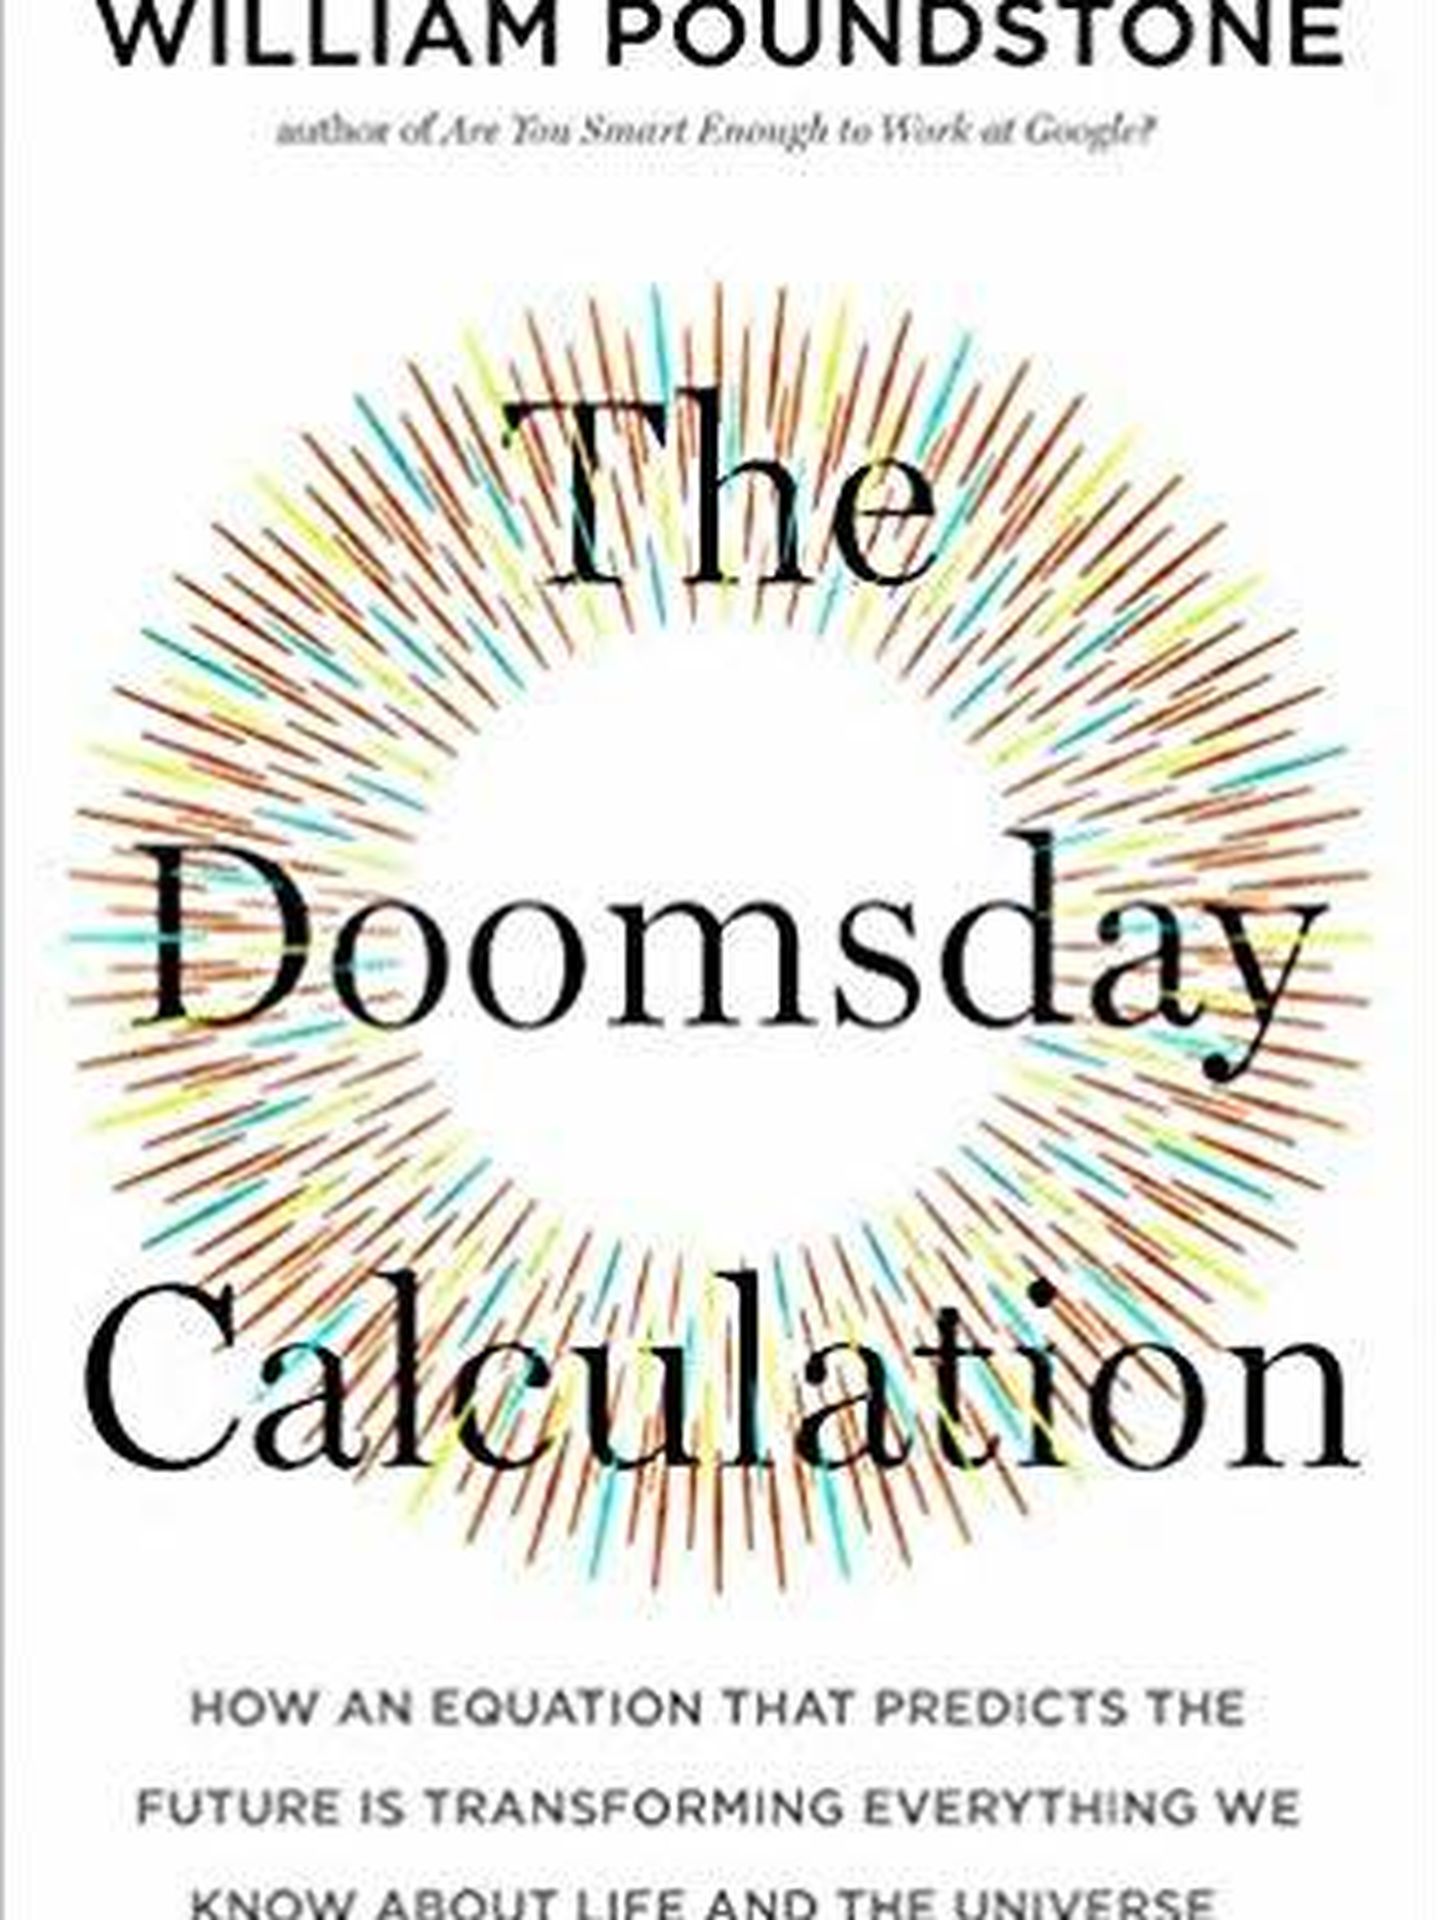 Portada de 'The Doomsday Calculation', de William Poundstone. 